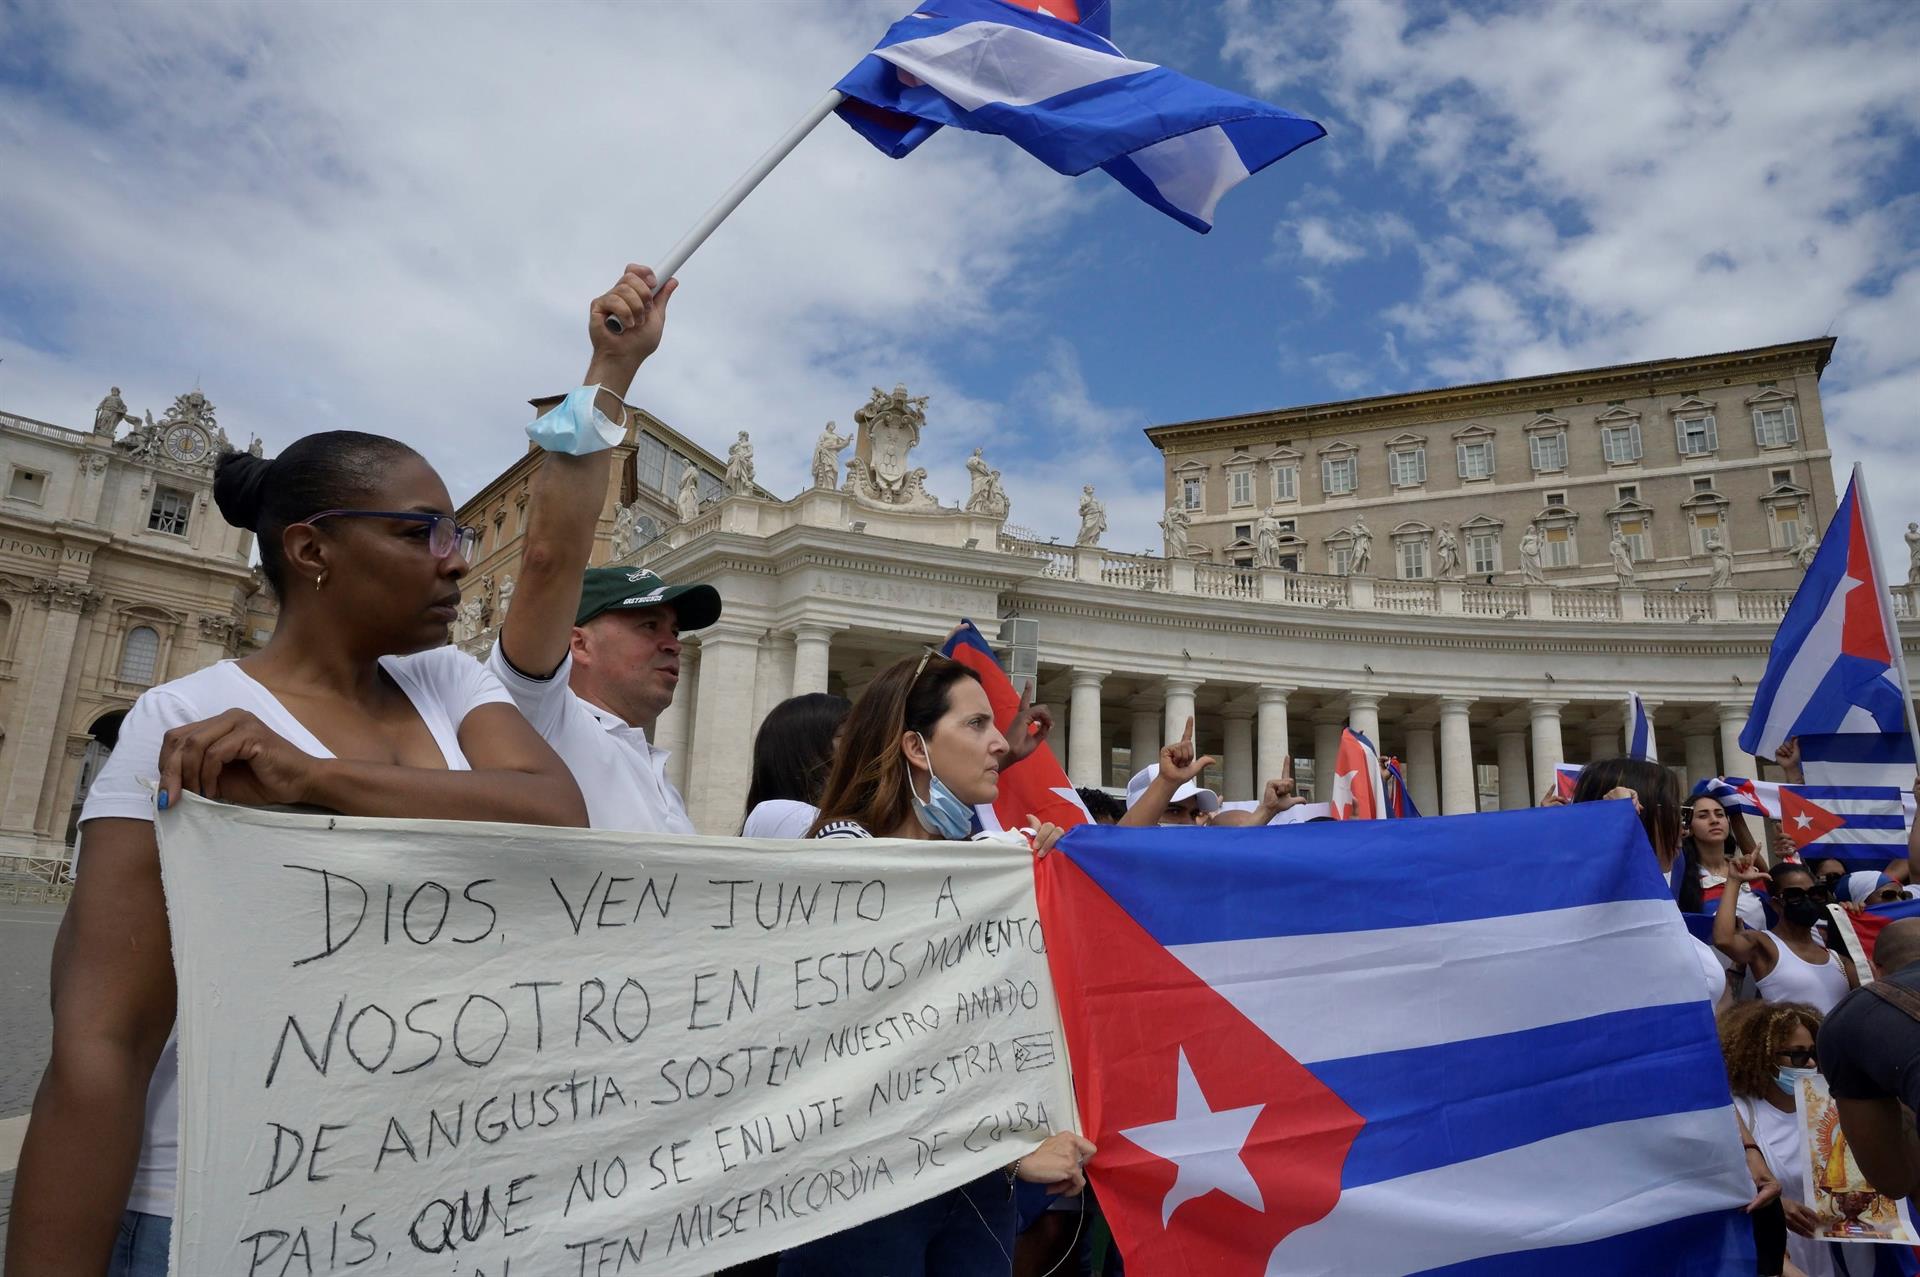 El Papa llama al diálogo en Cuba para construir "una sociedad más justa y fraterna"